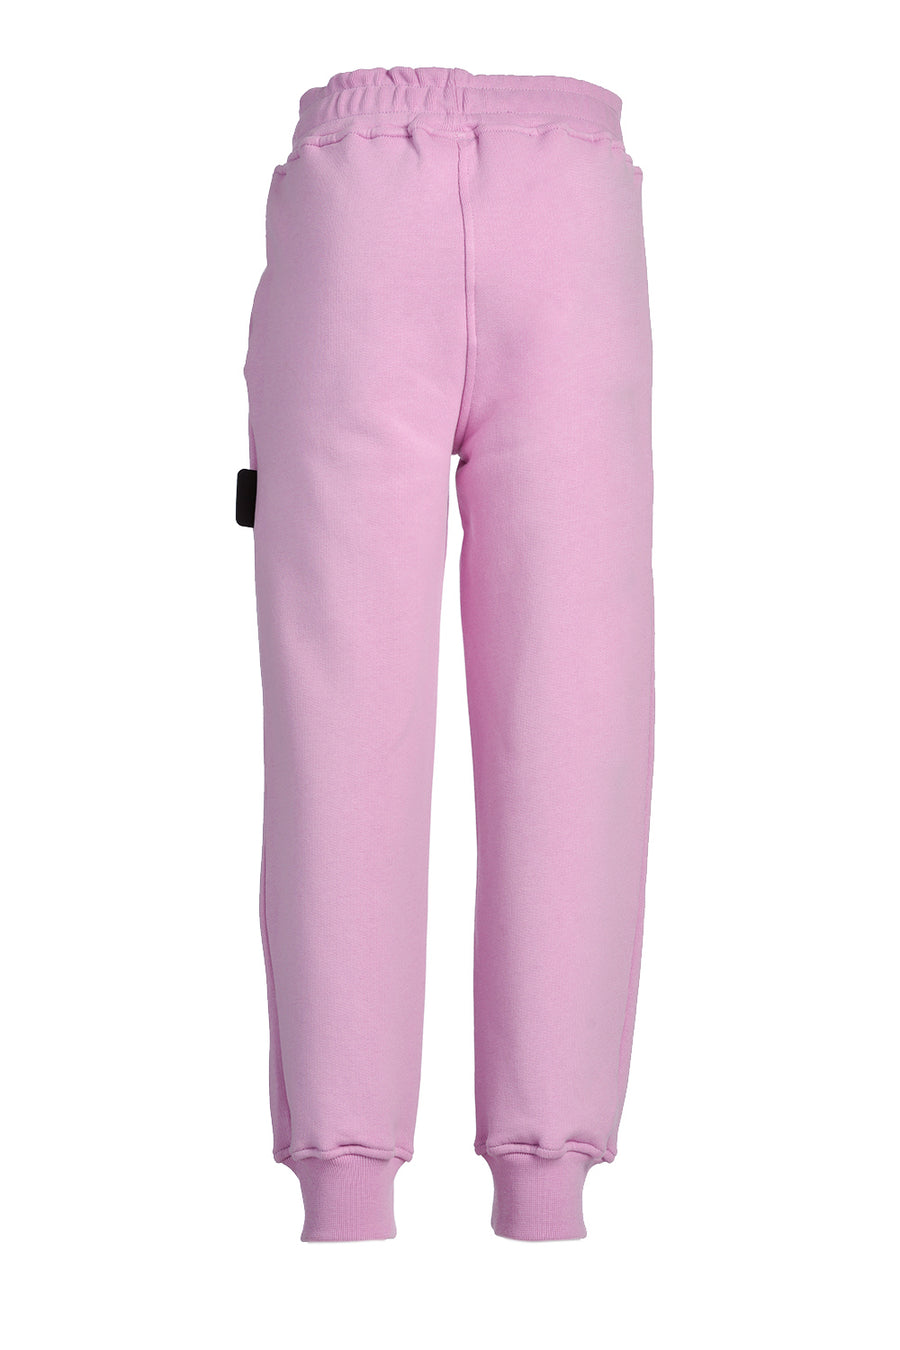 Pantalone in tuta rosa con logo